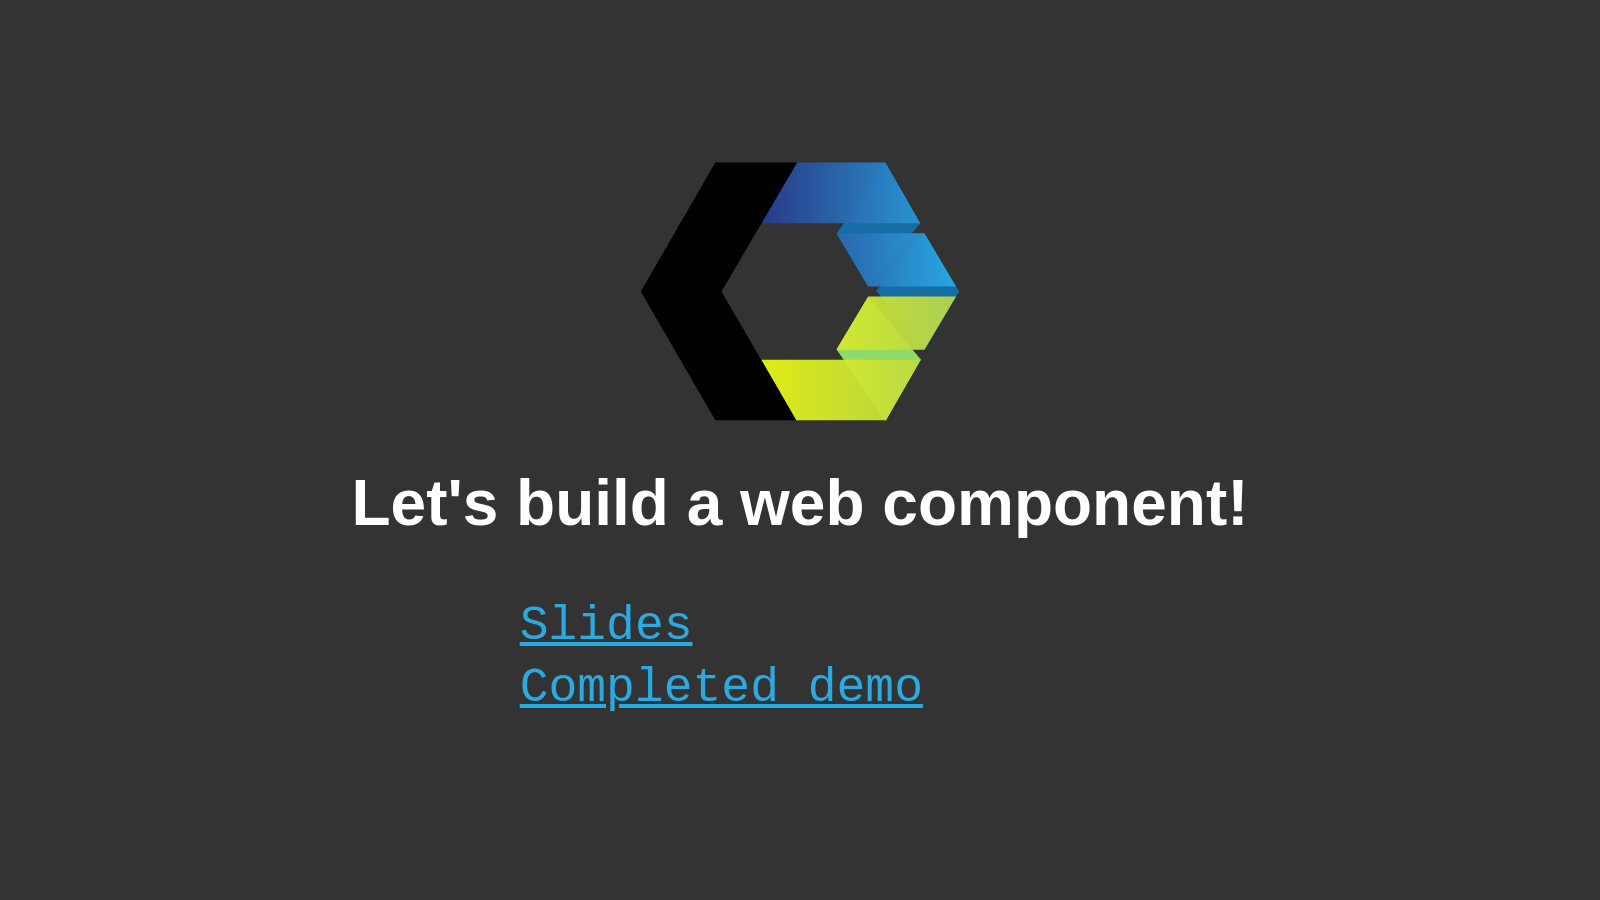 Let’s build a Web Component!